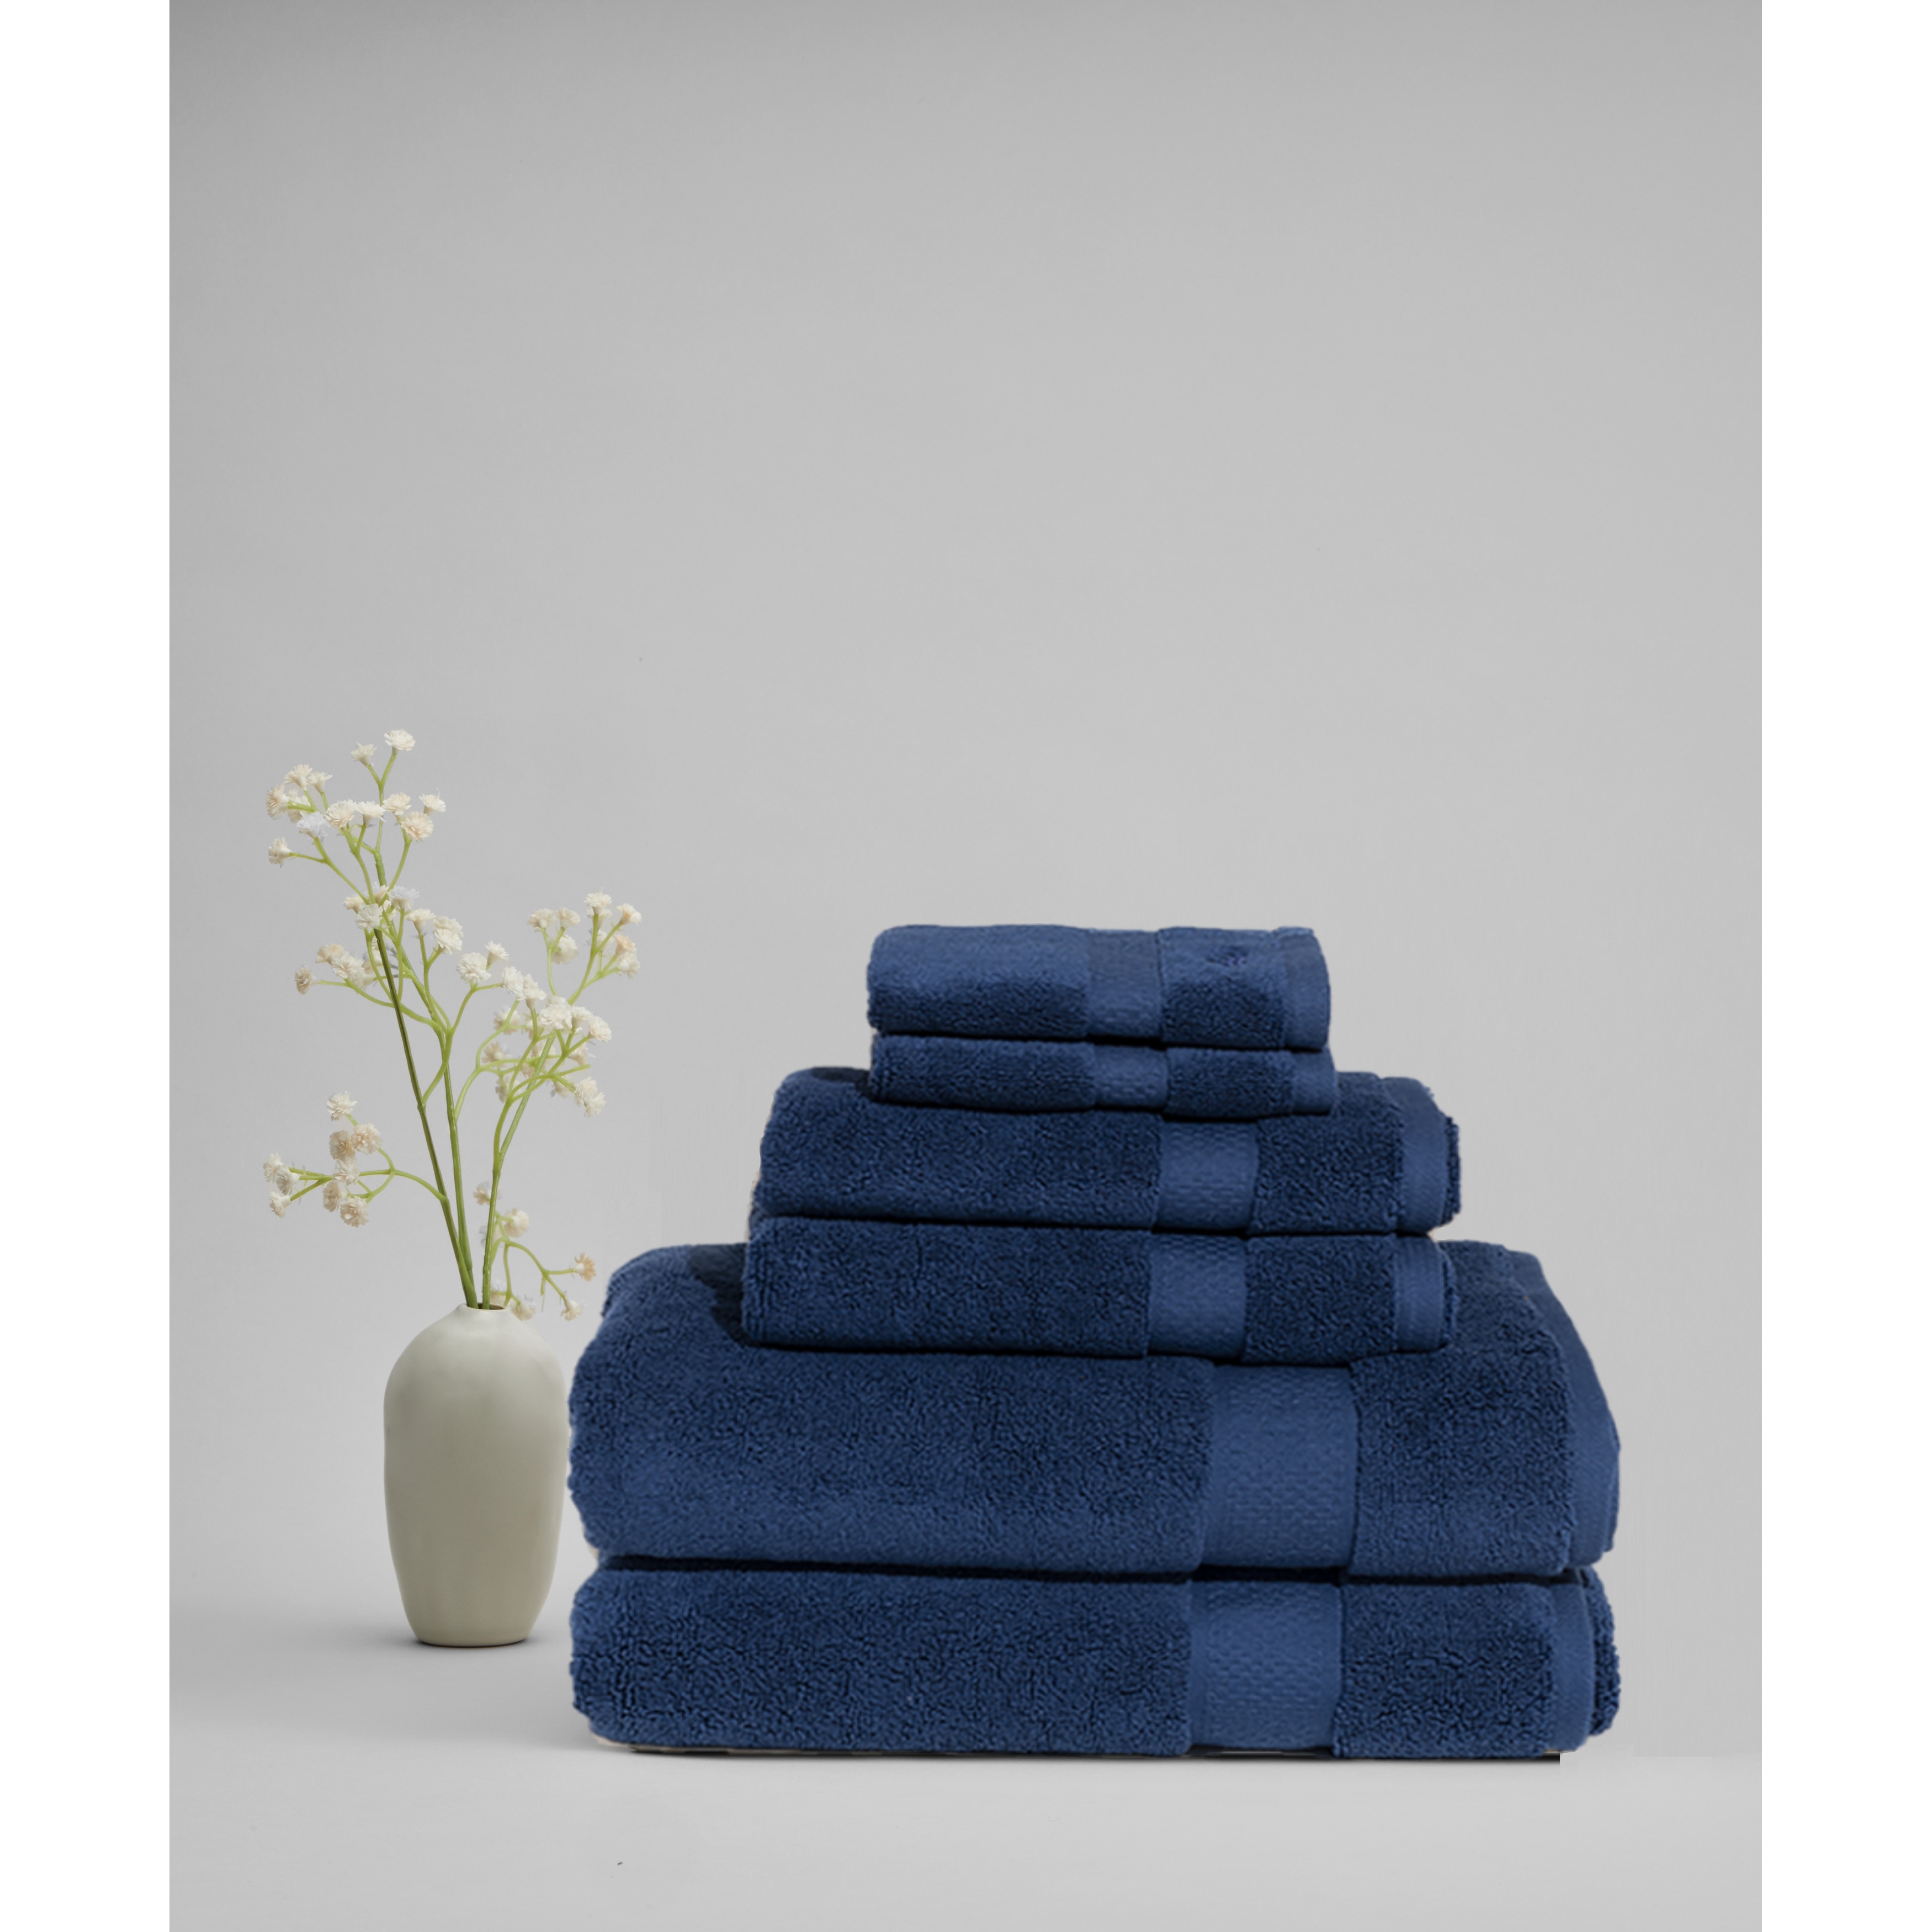 Royal blue navy velvet Hand & Bath Towel by RoseAesthetic